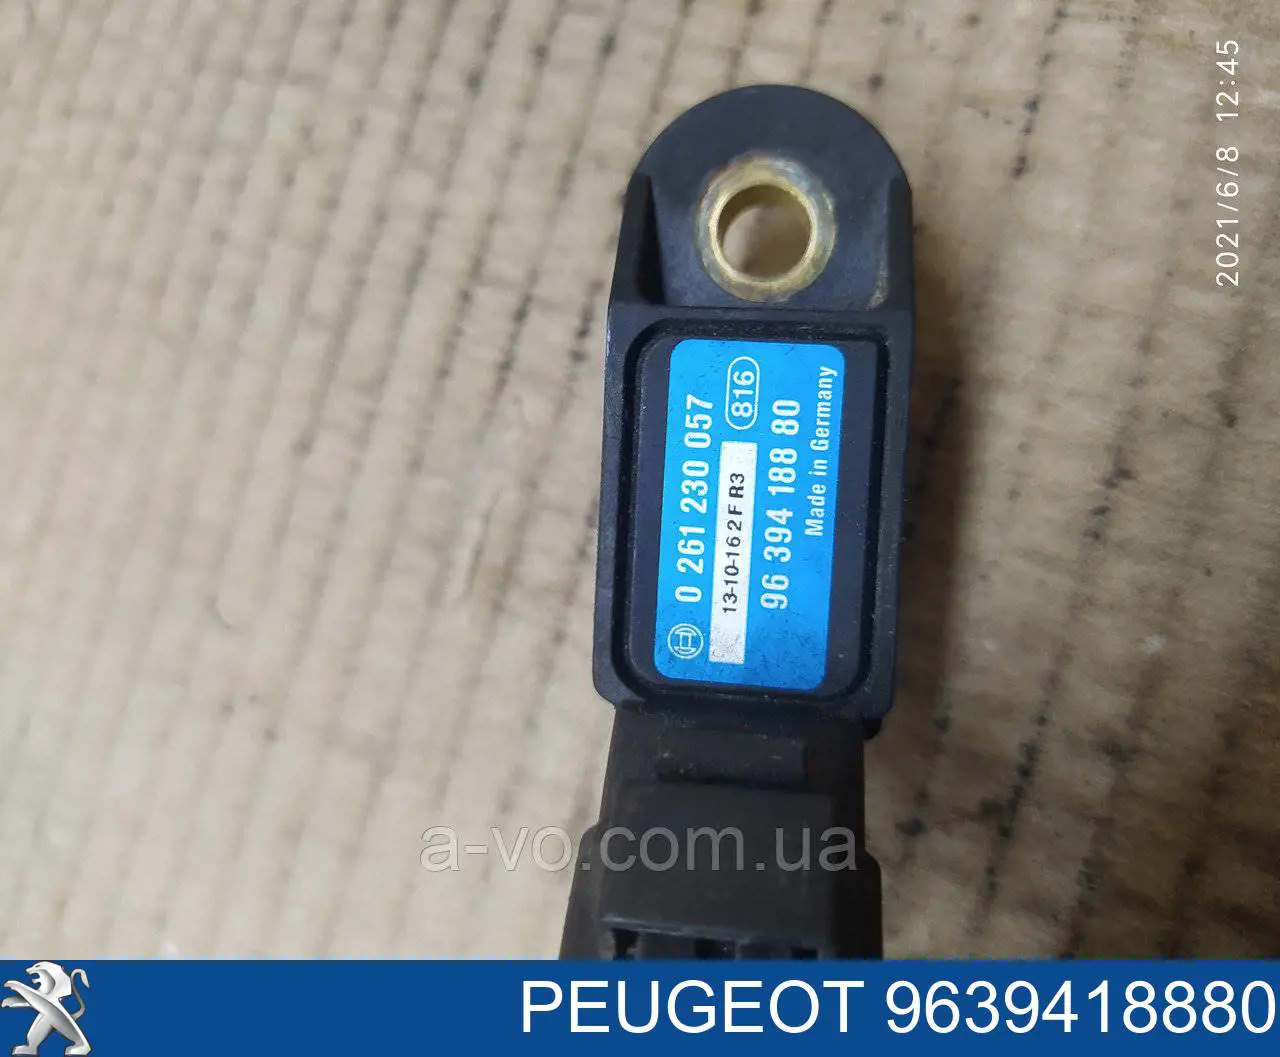 9639418880 Peugeot/Citroen датчик давления во впускном коллекторе, map